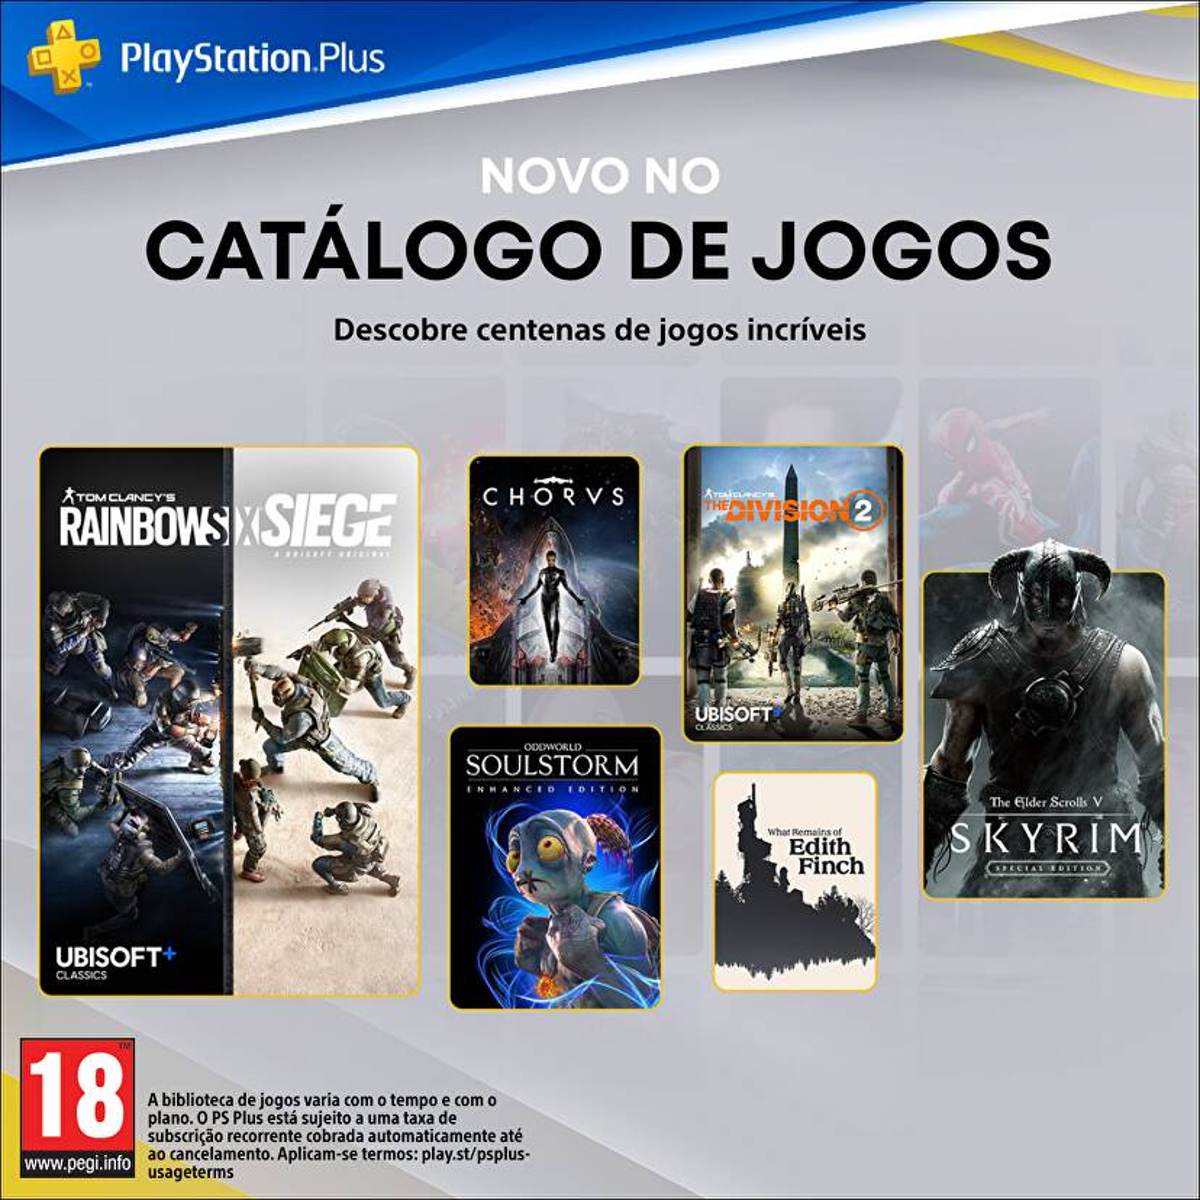 JOGOS DE PS3 CHEGANDO AO PS5 COM A PSPLUS PREMIUM 